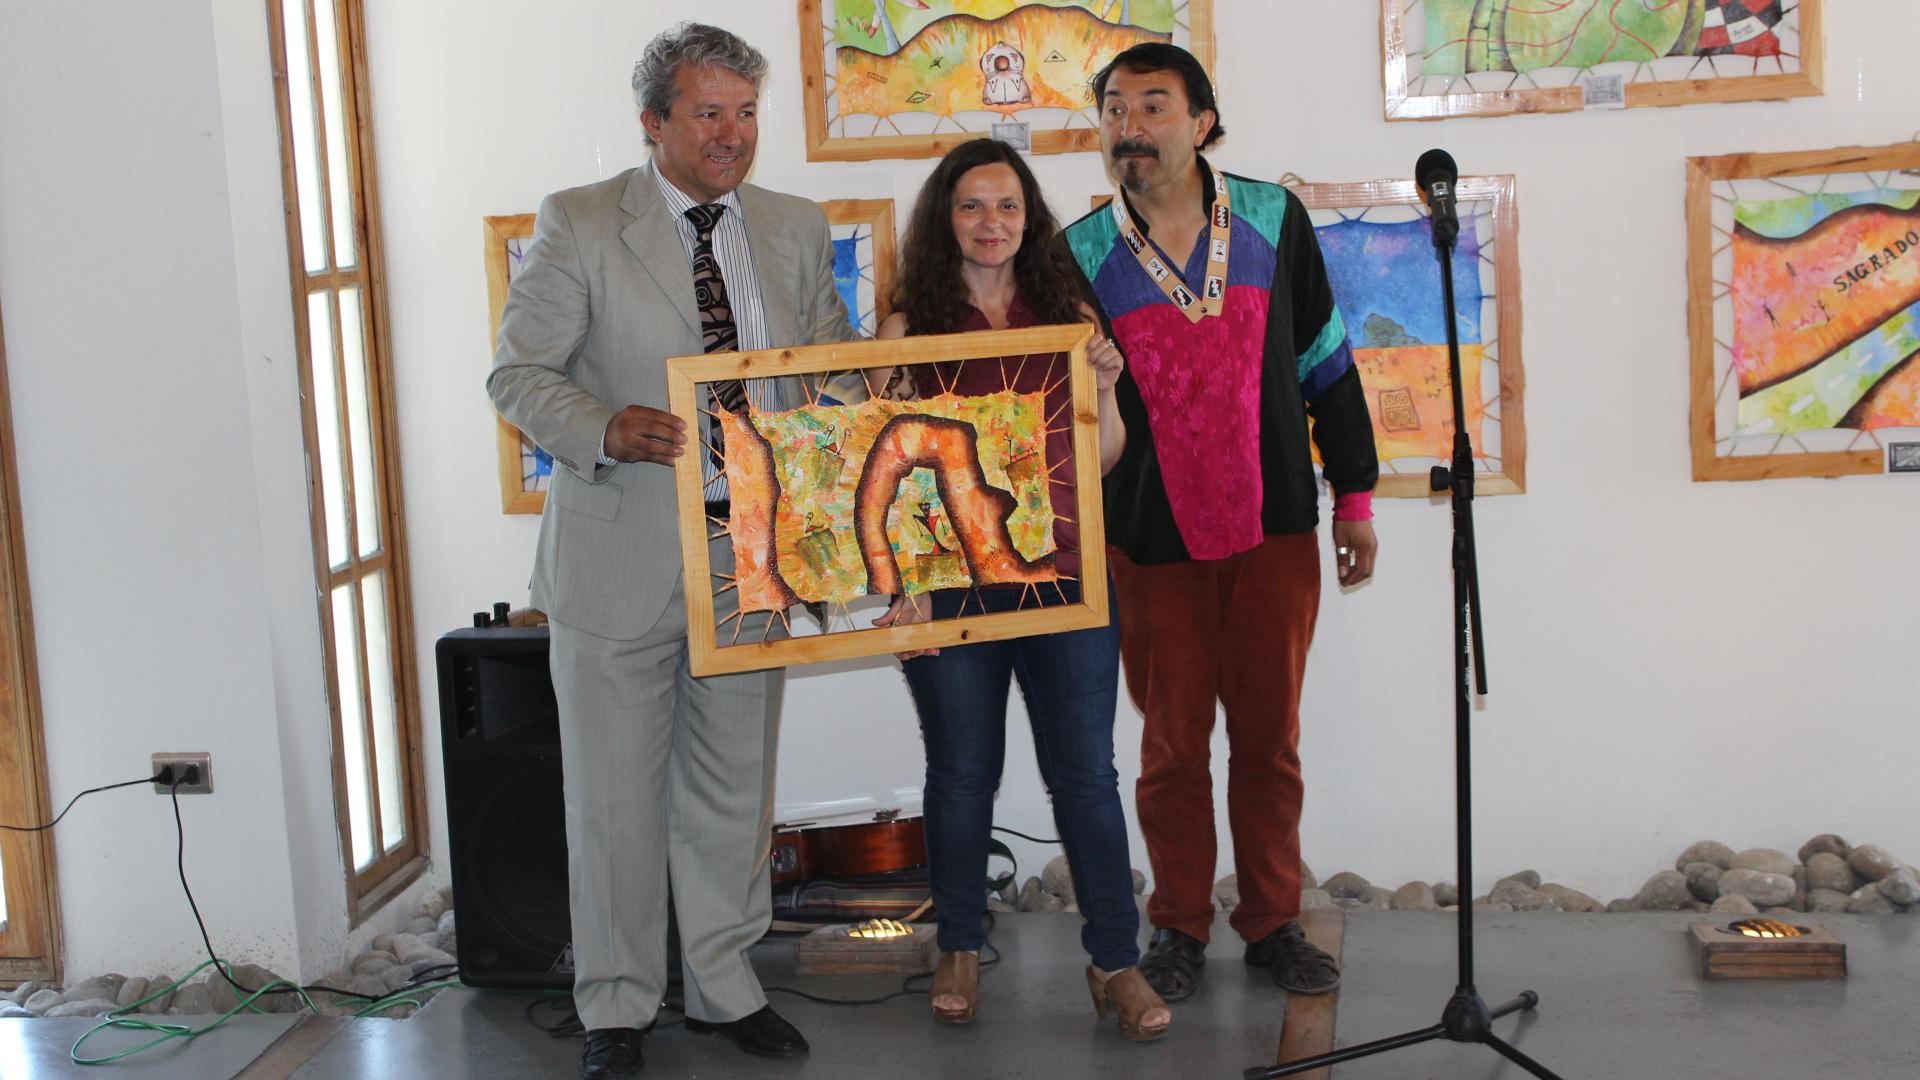 De izquierda a derecha, Jaime Jiménez, encargado comunal de la oficina de pueblos originarios de Coquimbo, Gabriela Carmona, directora del Museo del Limarí y Felipe Retamal Ajoyak, artista de la obra en exposición.